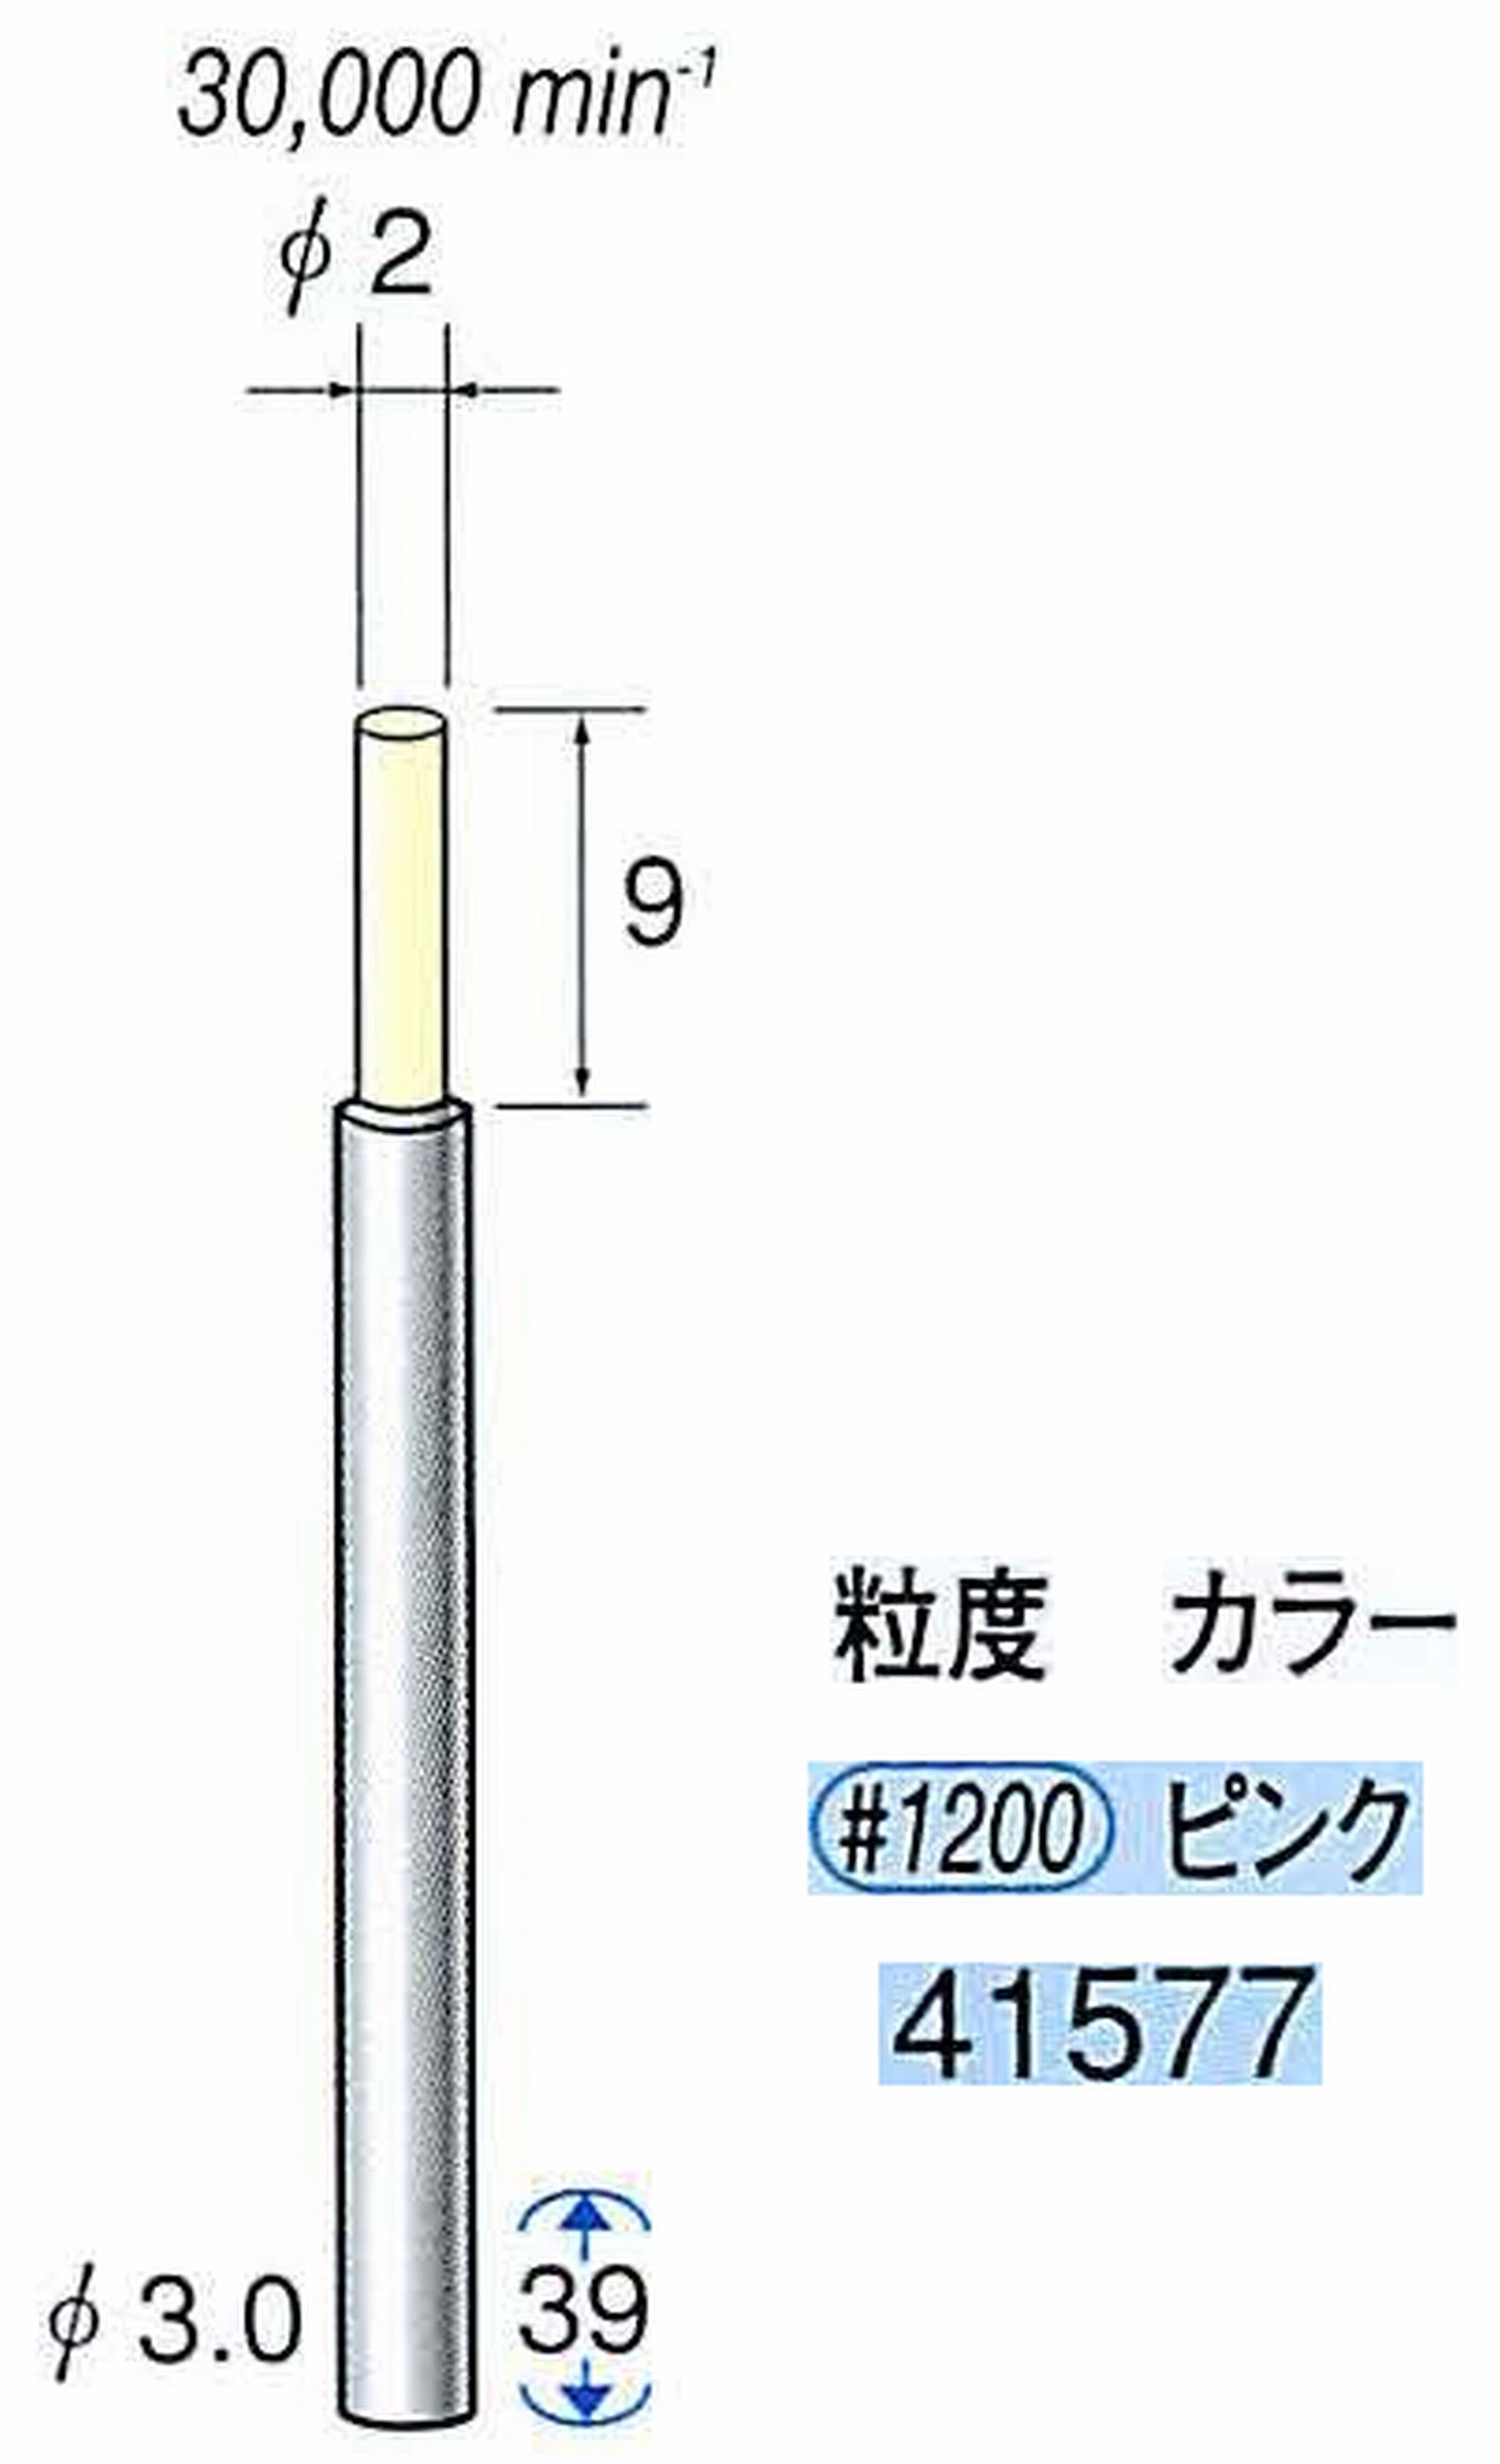 ナカニシ/NAKANISHI セラファイバー精密軸付砥石(カラー ピンク) 軸径(シャンク) φ3.0mm 41577